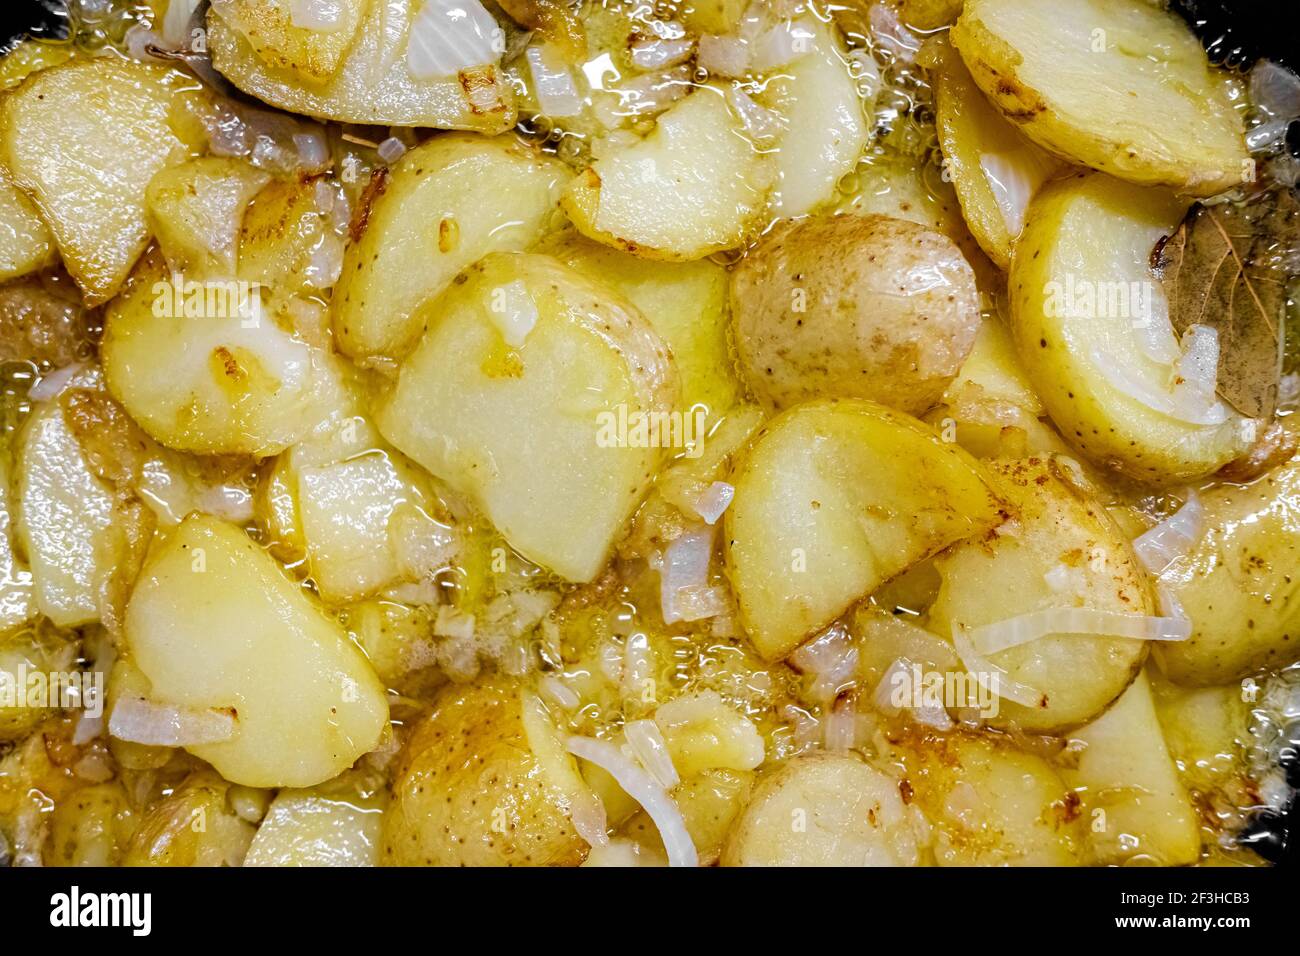 Plat espagnol typique à base de pommes de terre et d'ail, poêlé dans une casserole avec de l'huile d'olive, vu d'en haut Banque D'Images